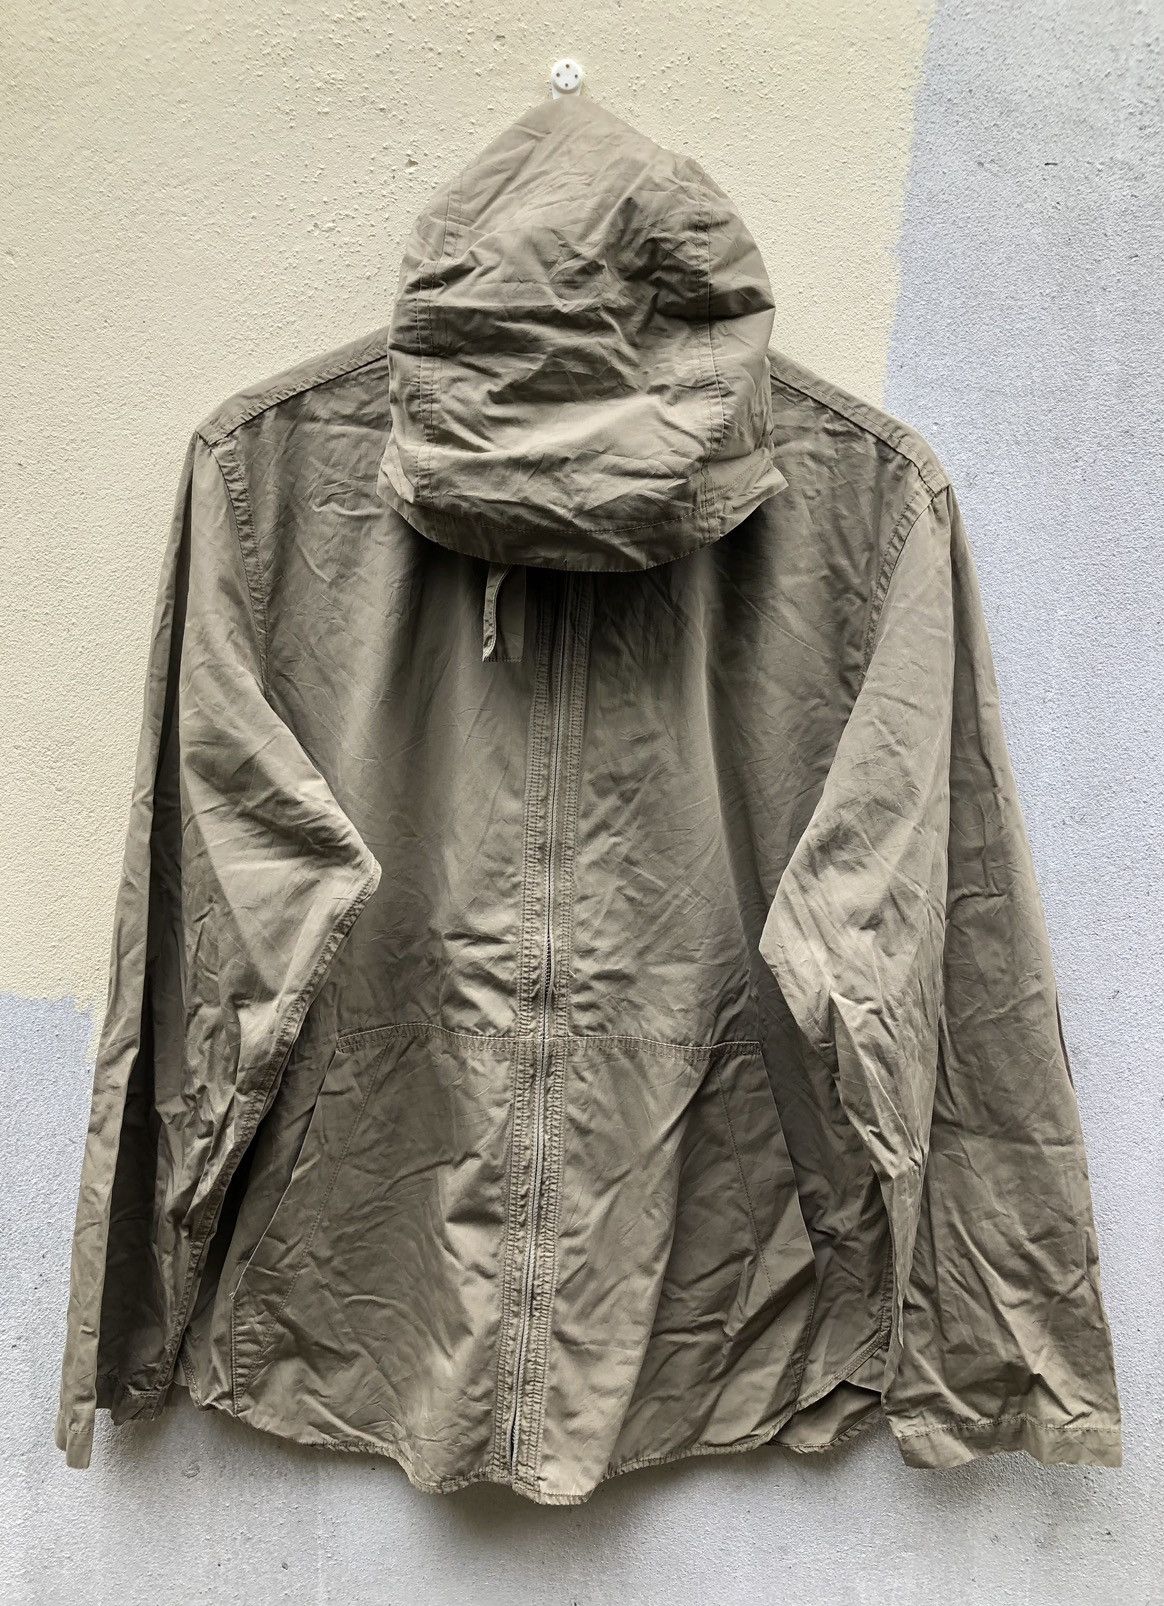 Vintage Mangaret Howell Linen’s Hoodies Jackets Size US L / EU 52-54 / 3 - 1 Preview